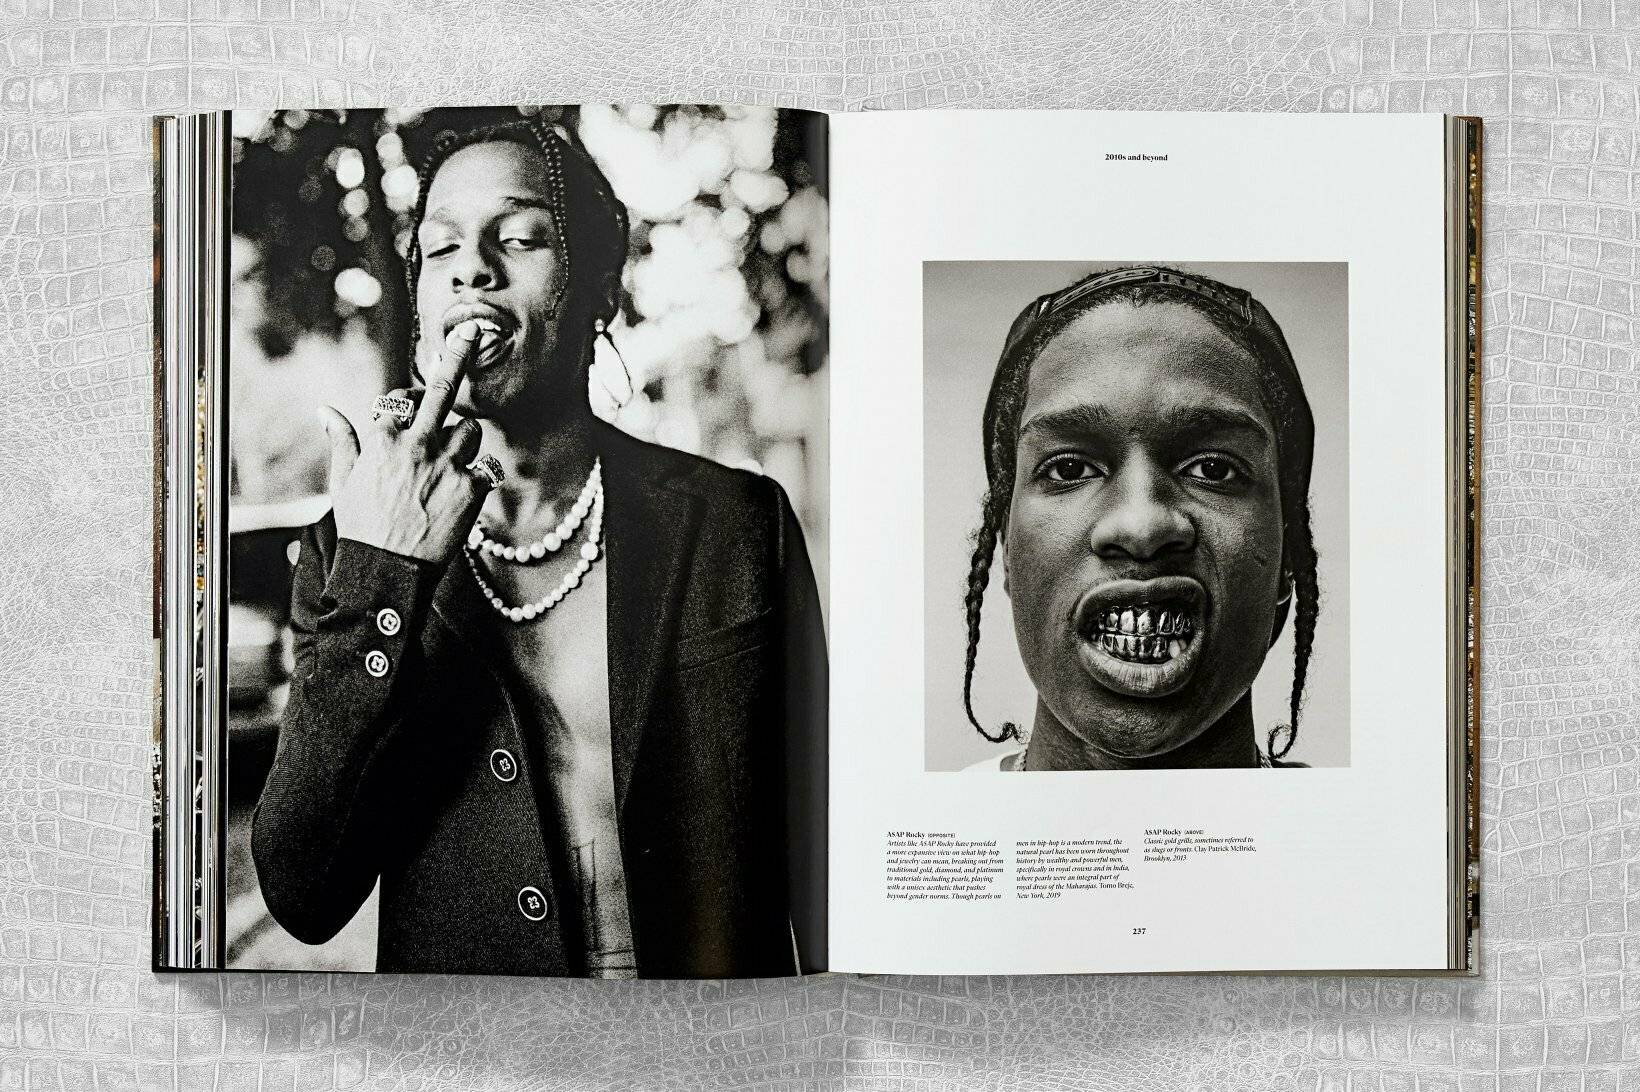 Le rappeur A$AP Rocky porte des “classic gold grills”. Photographie par Clay Patrick McBride.